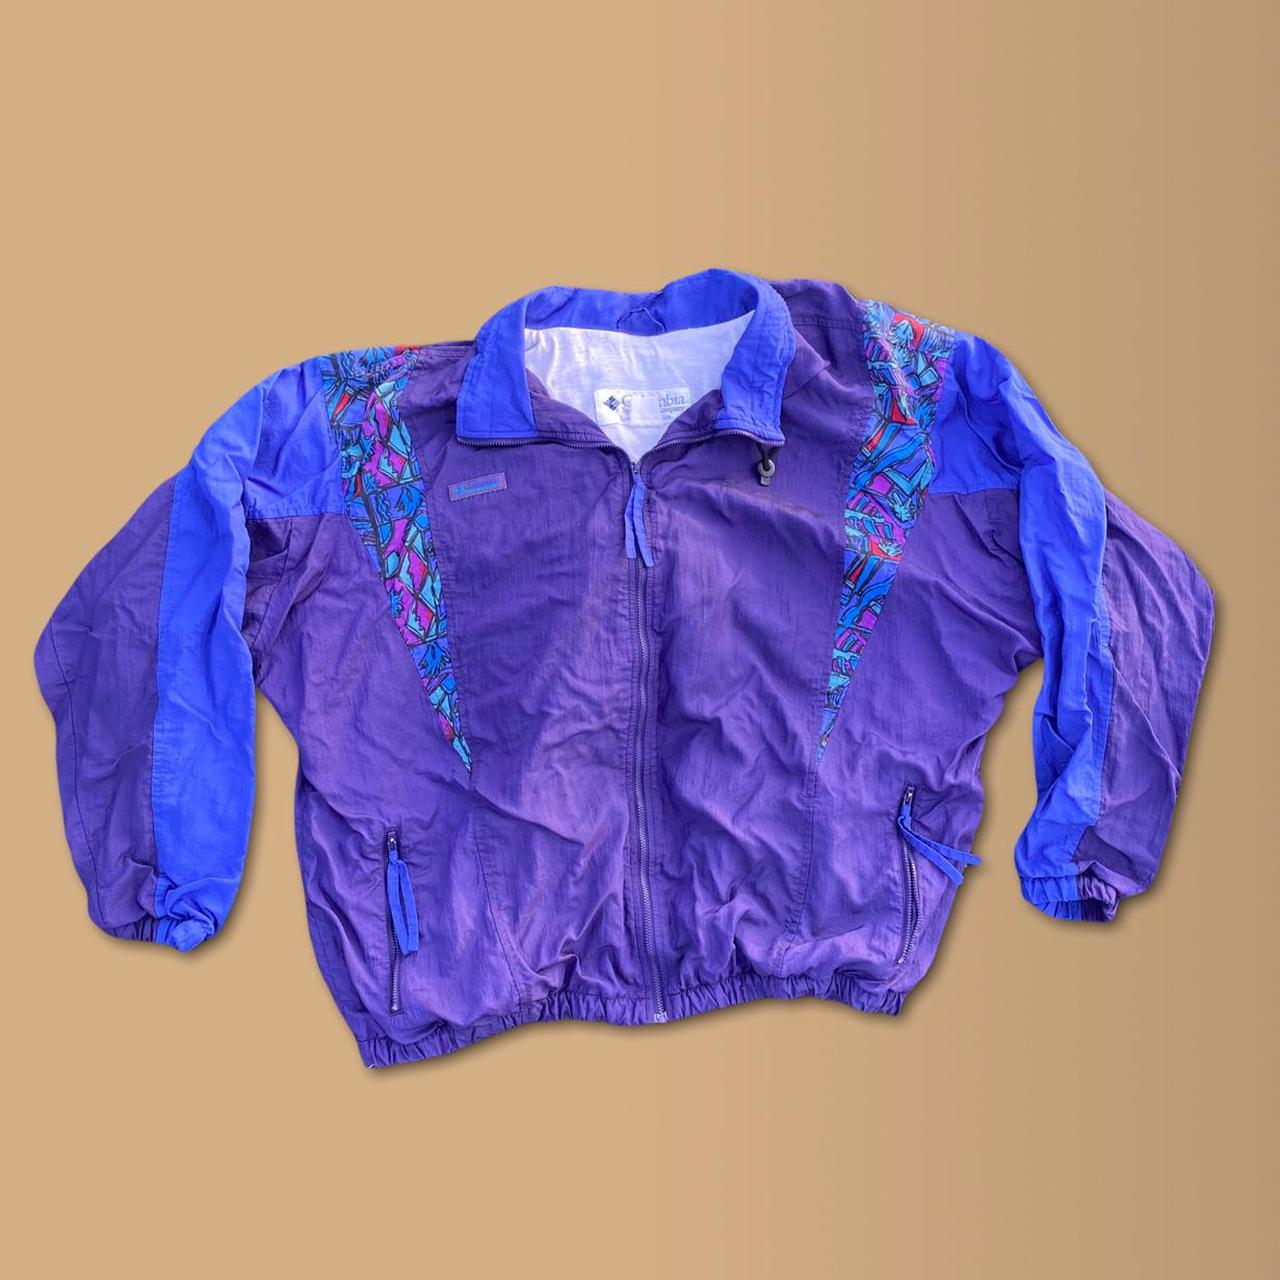 Columbia Sportswear Men's Purple and Blue Jacket